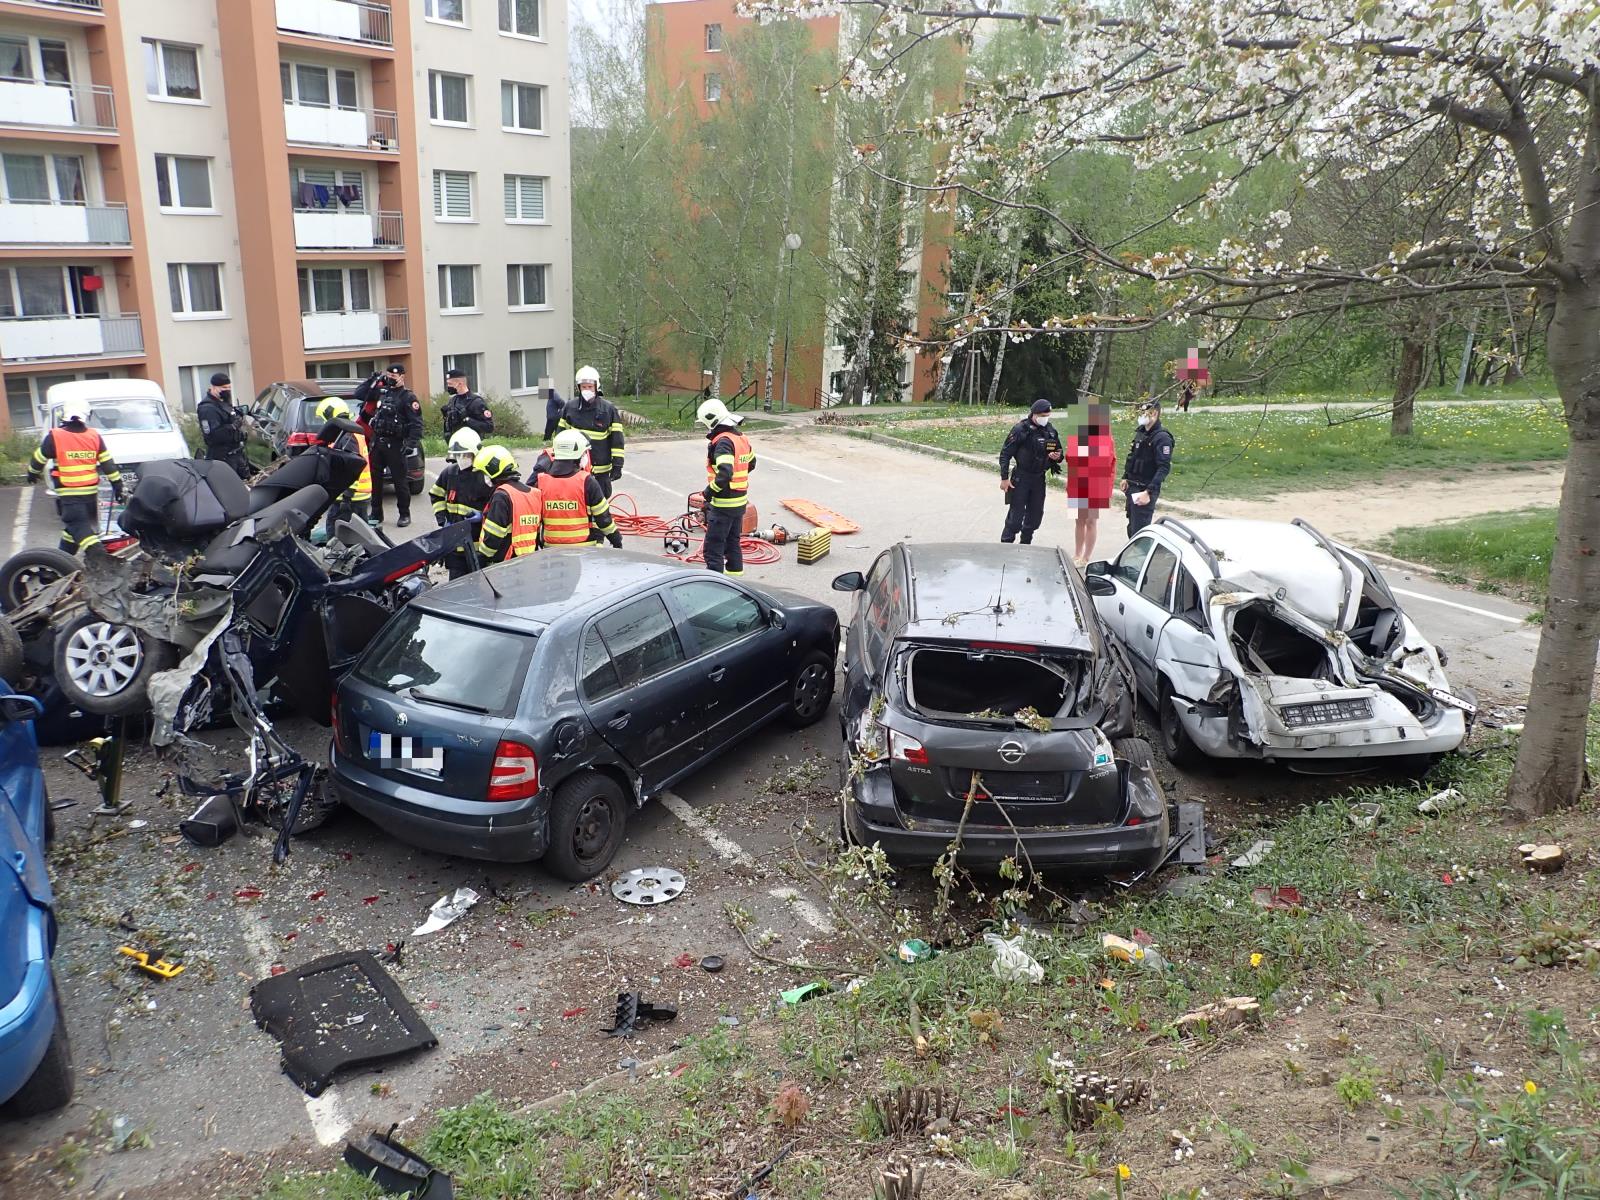 ZLK_DN ve Zlíně, ktde řidič sjel z komunikace a naboural několik aut na parkovišti_pohled na nabourané vozy.jpg